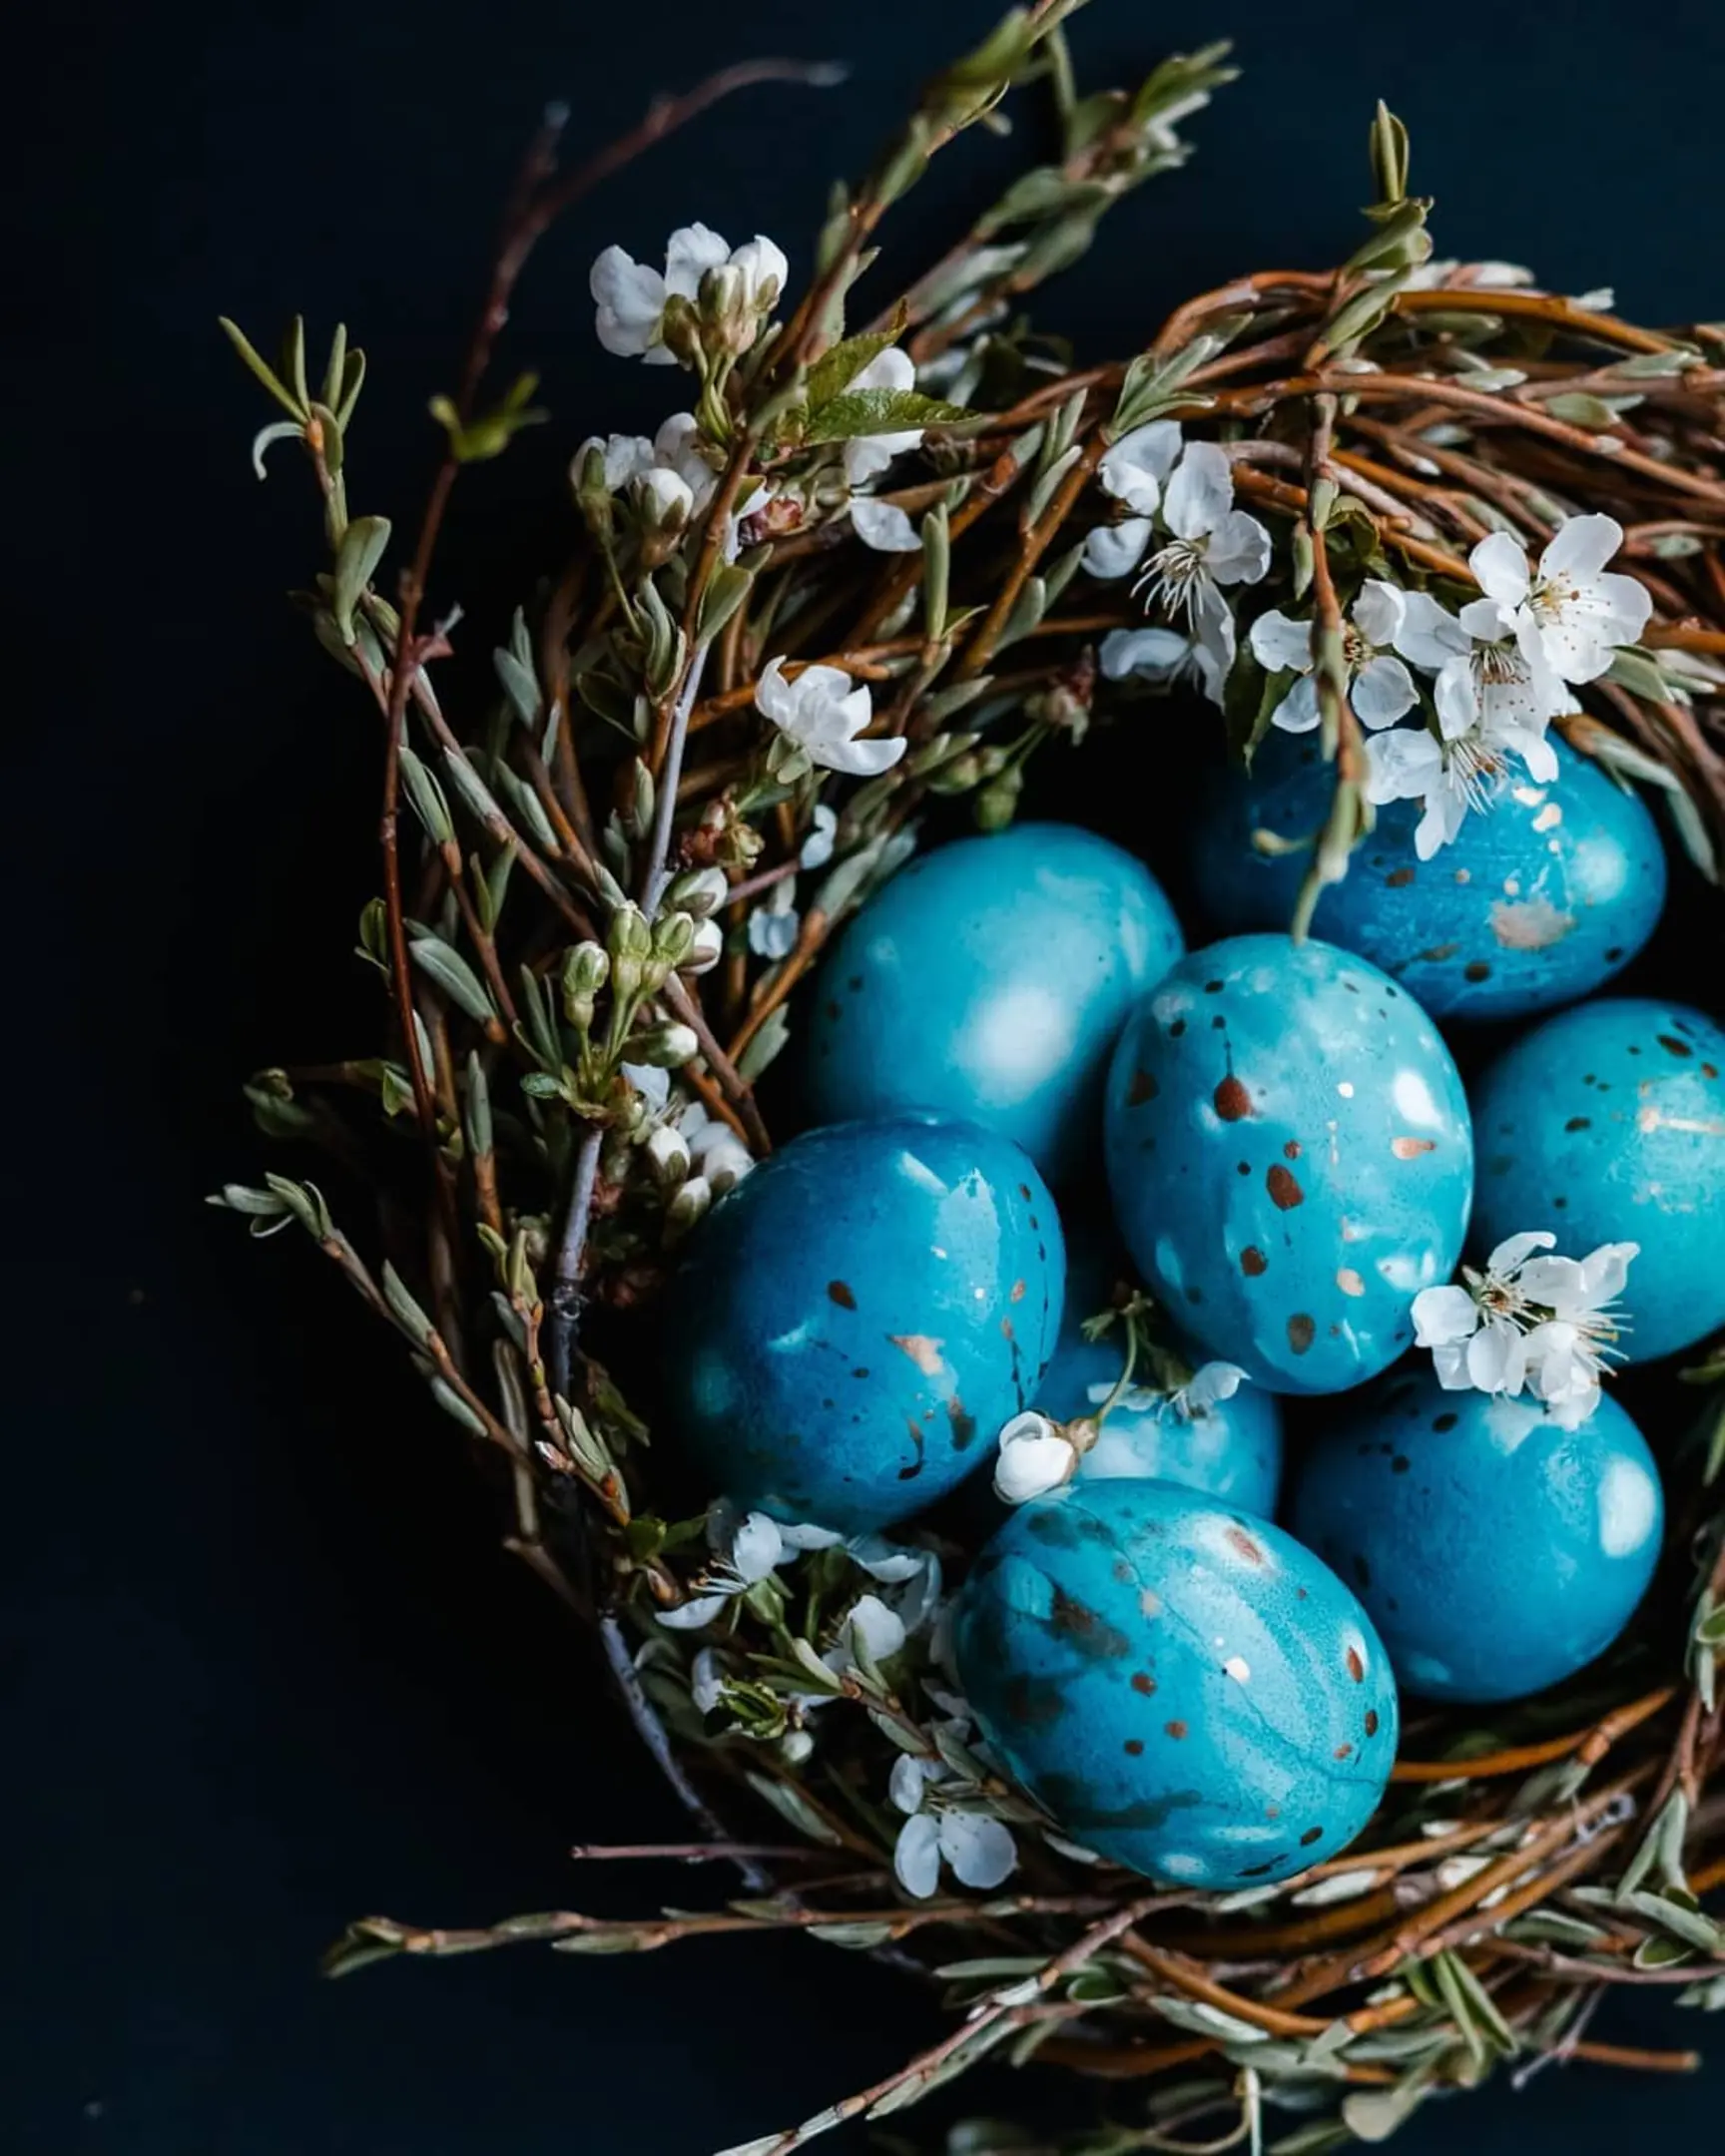 Яйца със сини петна лежат в гнездо с цветя на тъмния фон. Яйца със сини петна лежат в гнездо с цветя. На преден план се виждат клони с цветя. Гнездото е на тъмен фон.